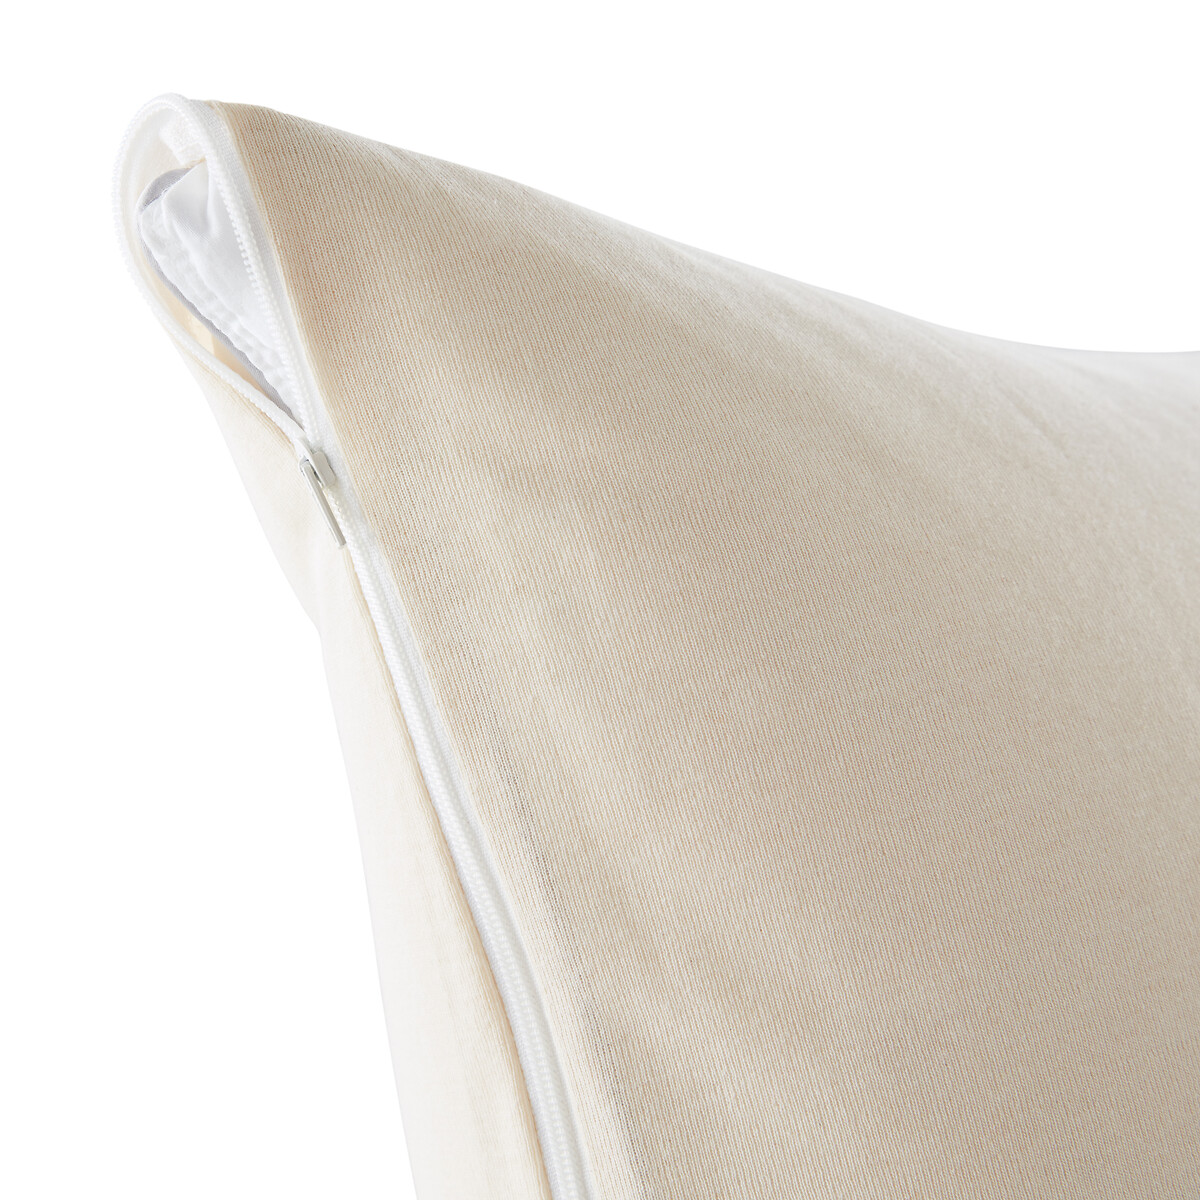 Чехол La Redoute Защитный непромокаемый на подушку из  биохлопка 40 x 60 см бежевый, размер 40 x 60 см - фото 2